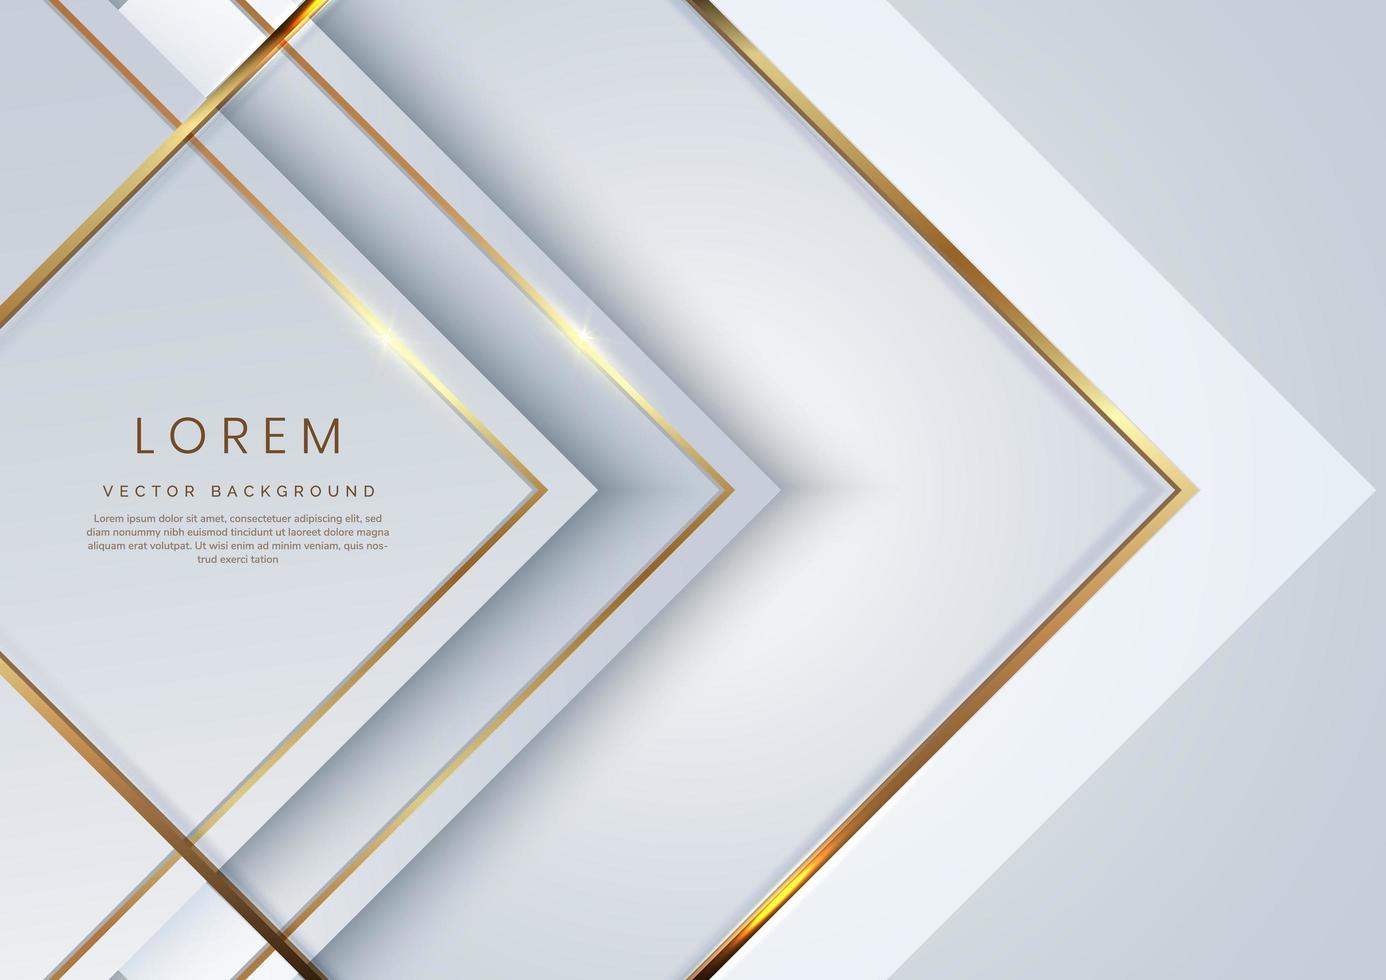 abstrato 3d modelo de luxo moderno fundo de seta branca e prata com brilho de luz de linha de brilho dourado. vetor